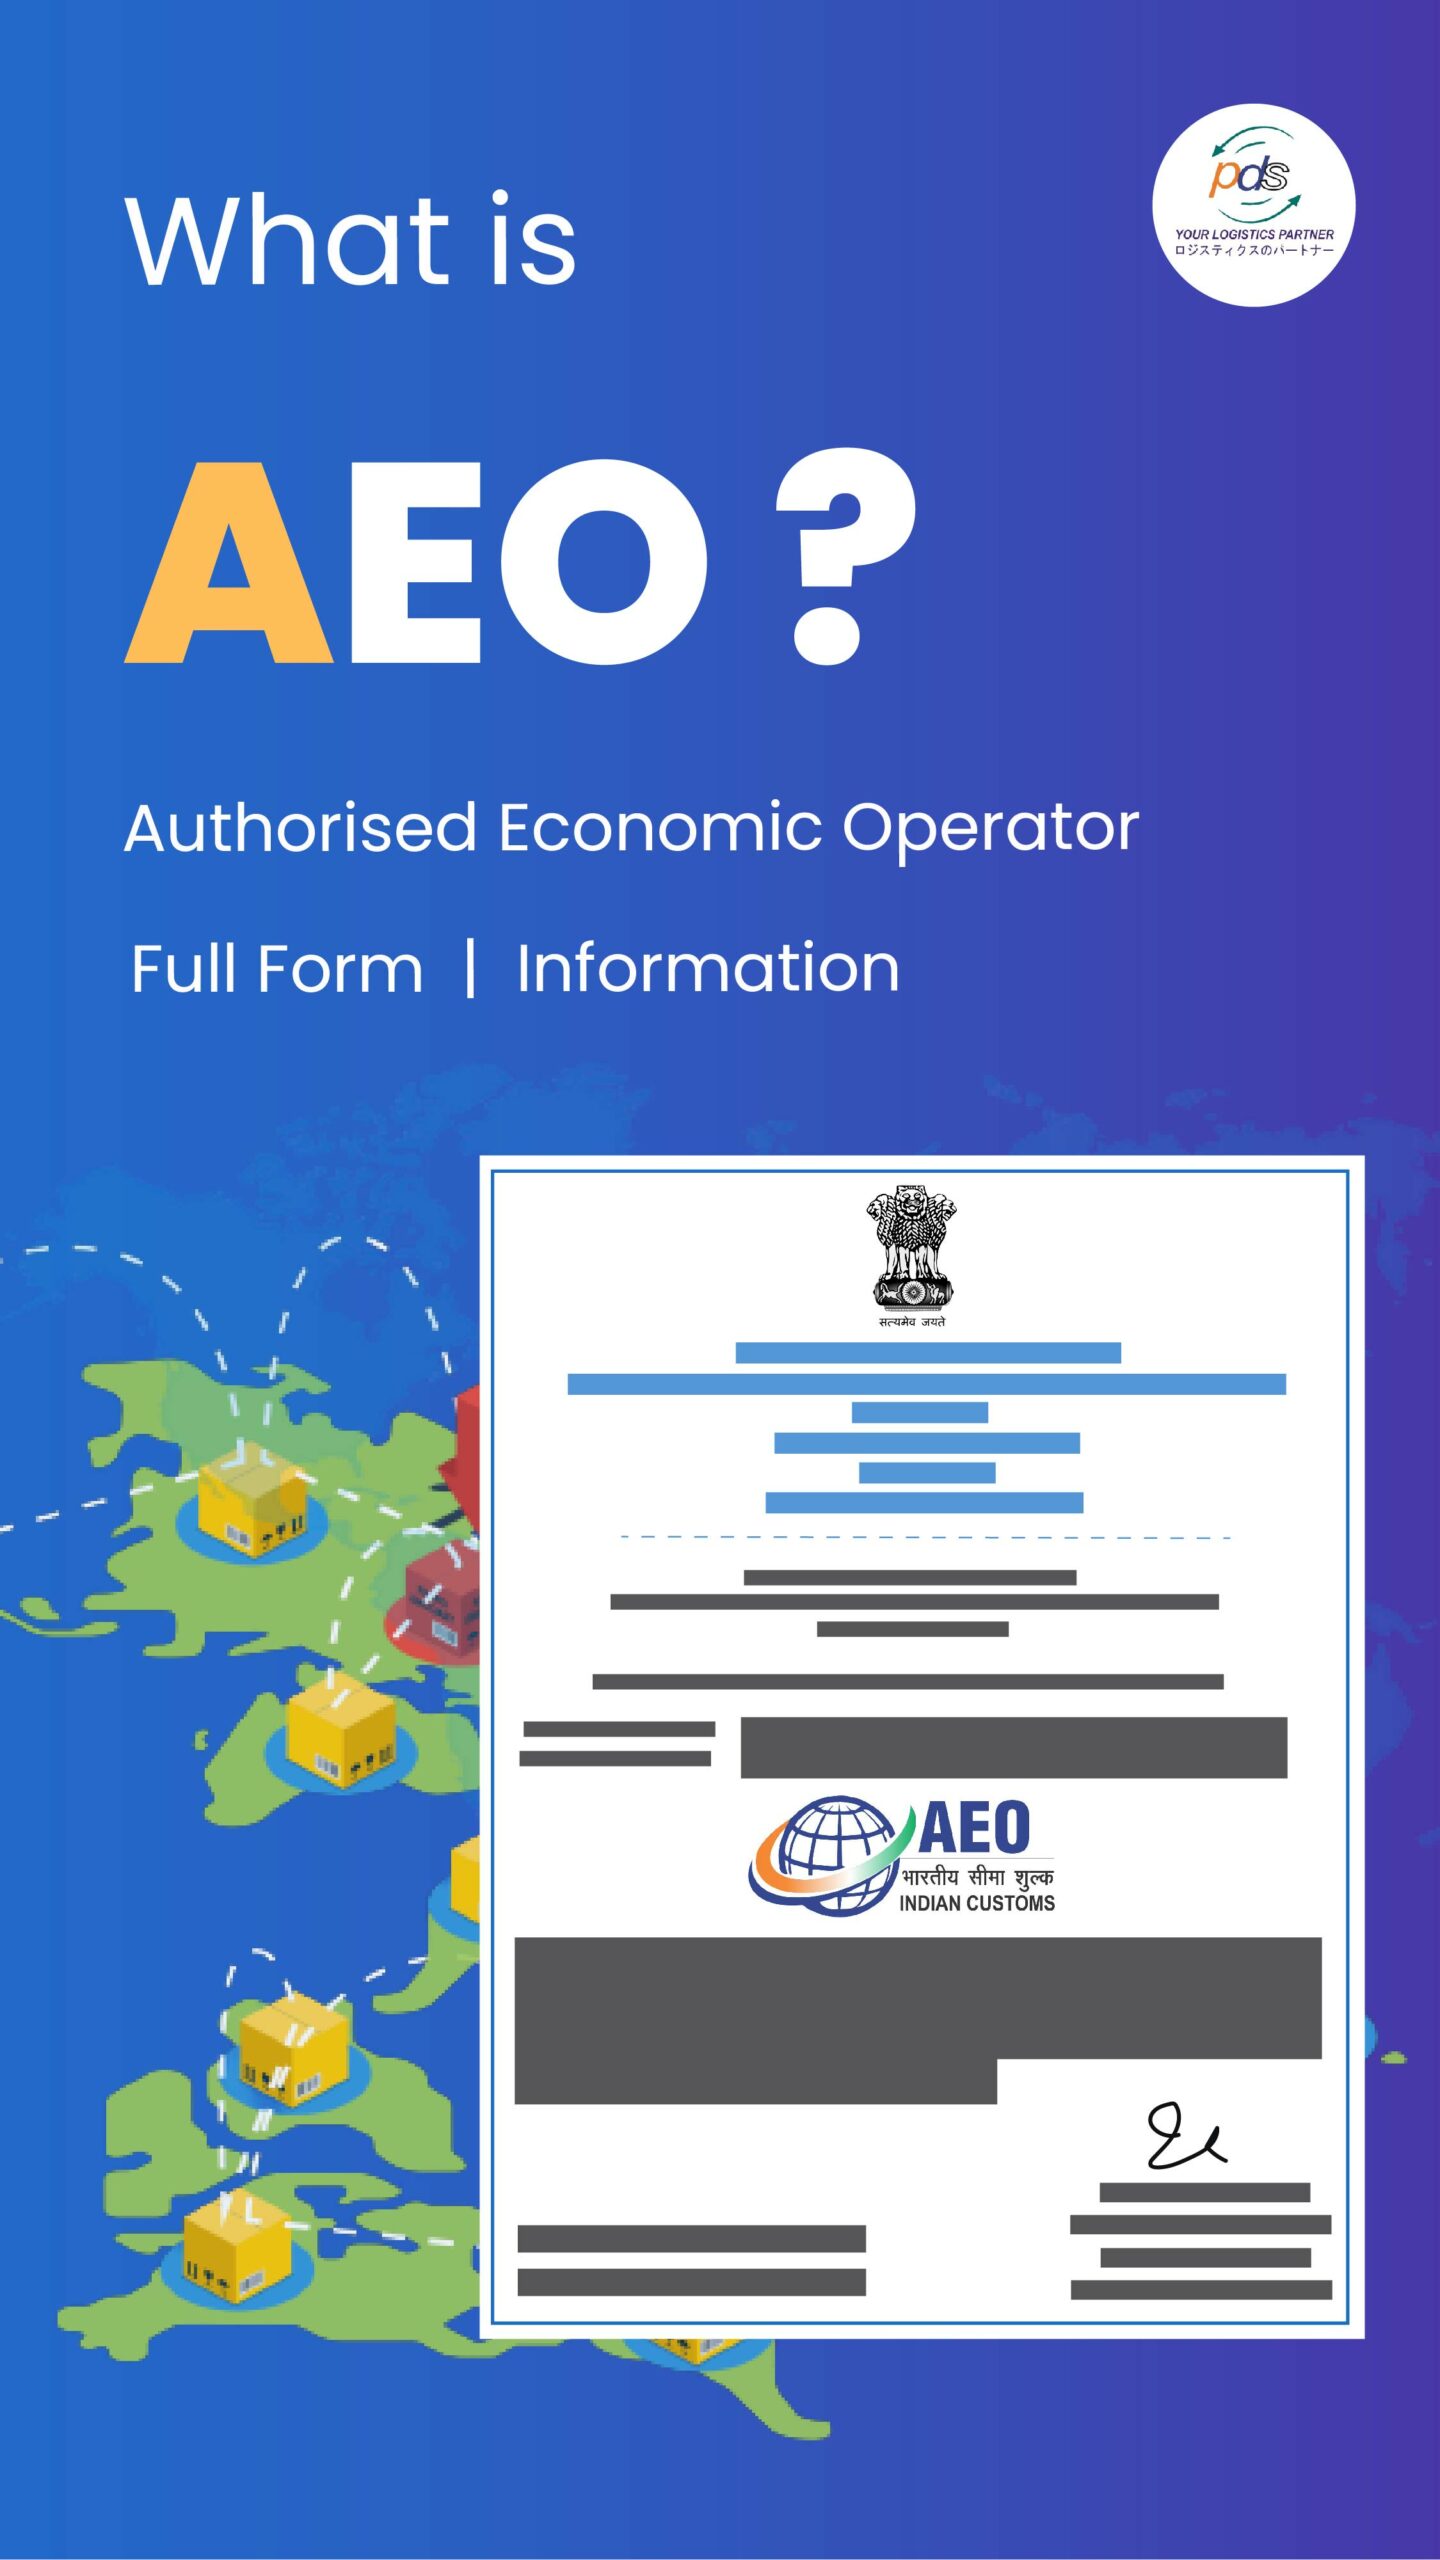 Knowledge of Authorized Economic Operator (AEO)